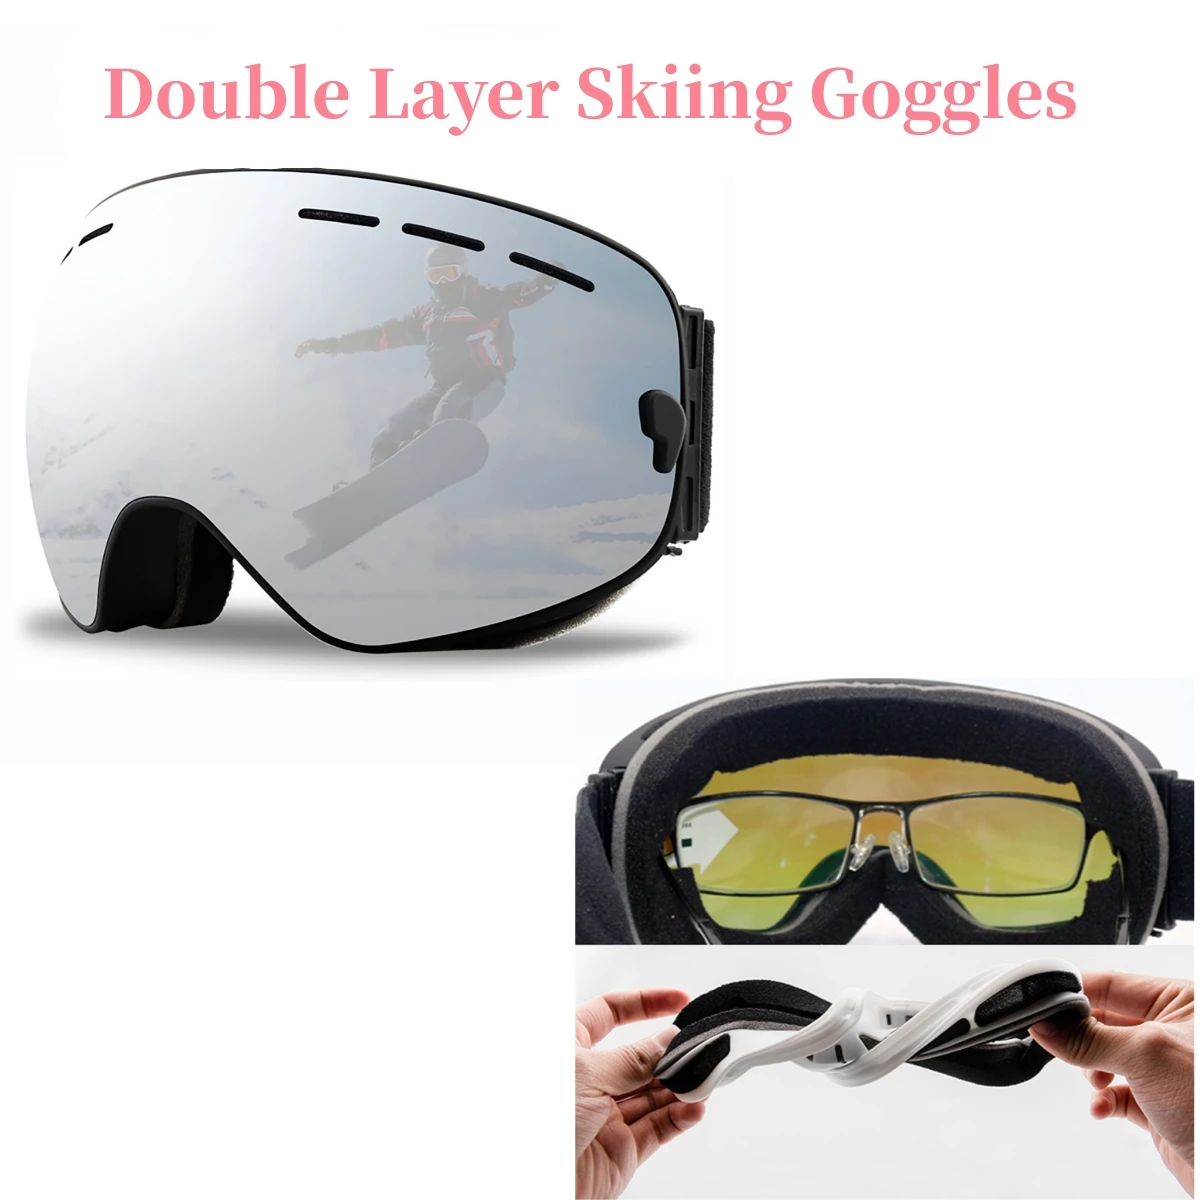 Skid snowboardglasögon bergskidåkning glasögon snöskoter vinter sportglasögon snöglasögon dubbel lager solglasögon för klättring